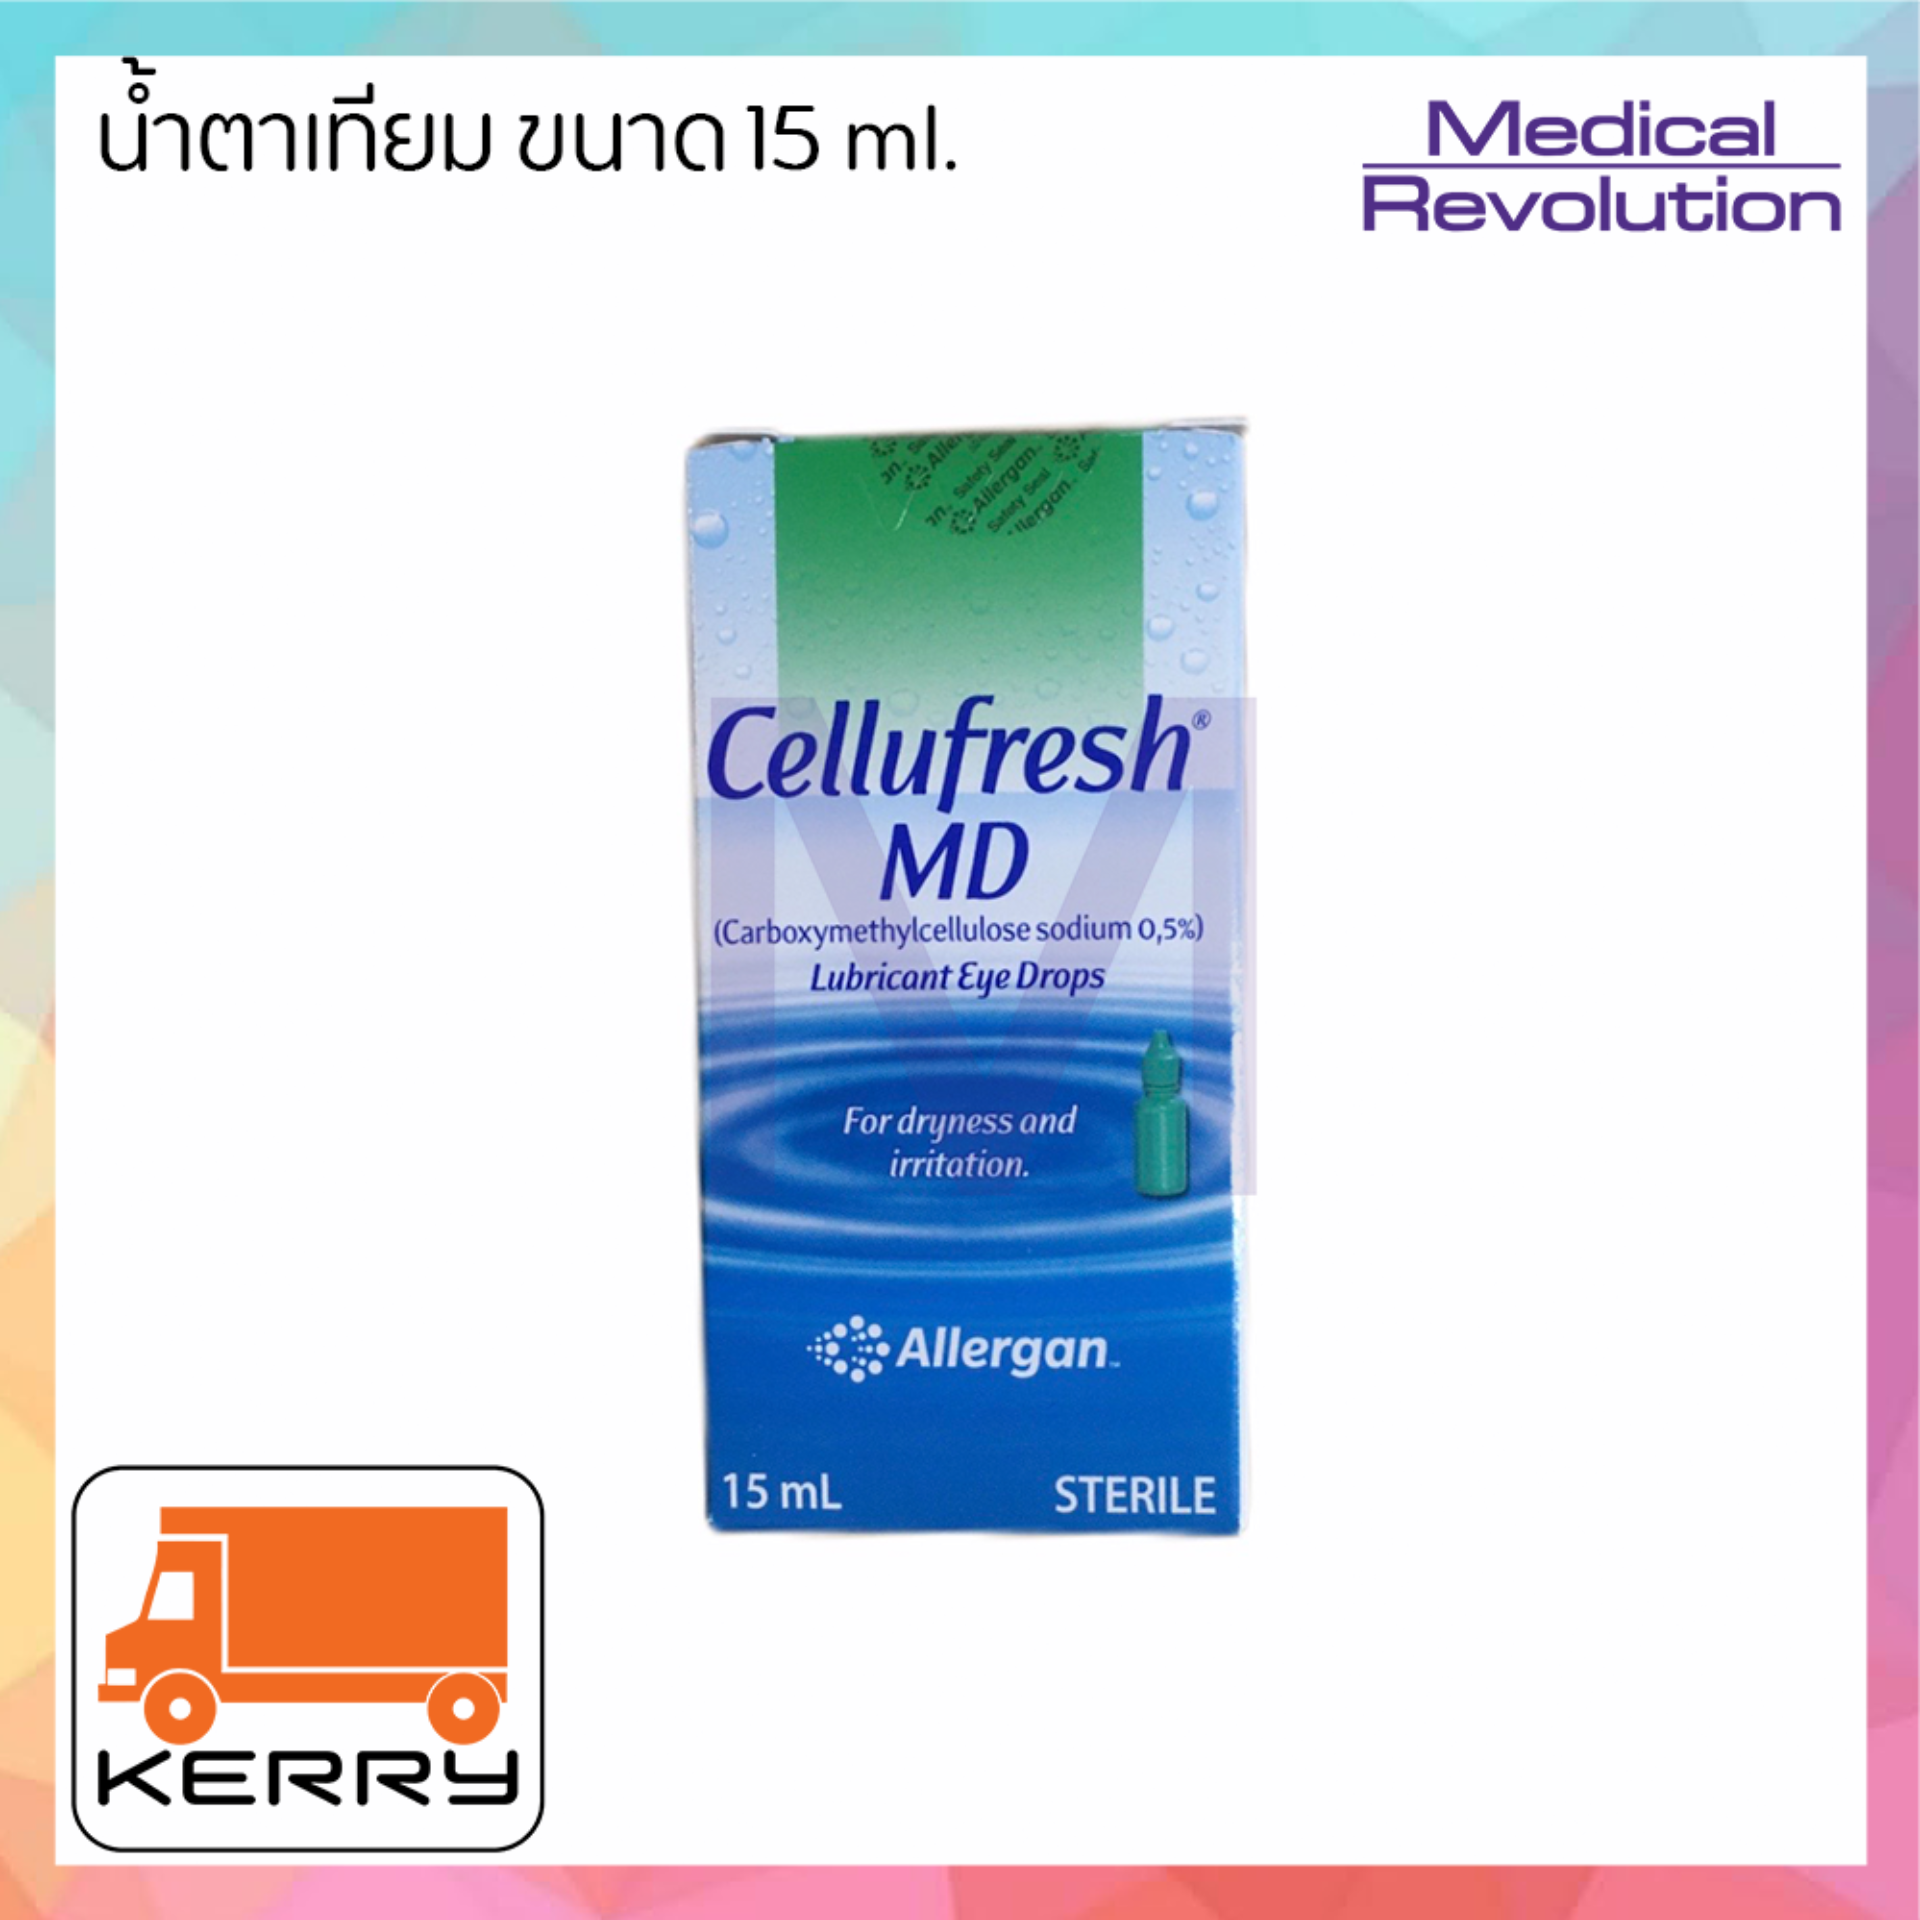 Cellufresh MD (เซลลูเฟรช เอ็มดี) 15 ml. จำนวน 1 ขวด